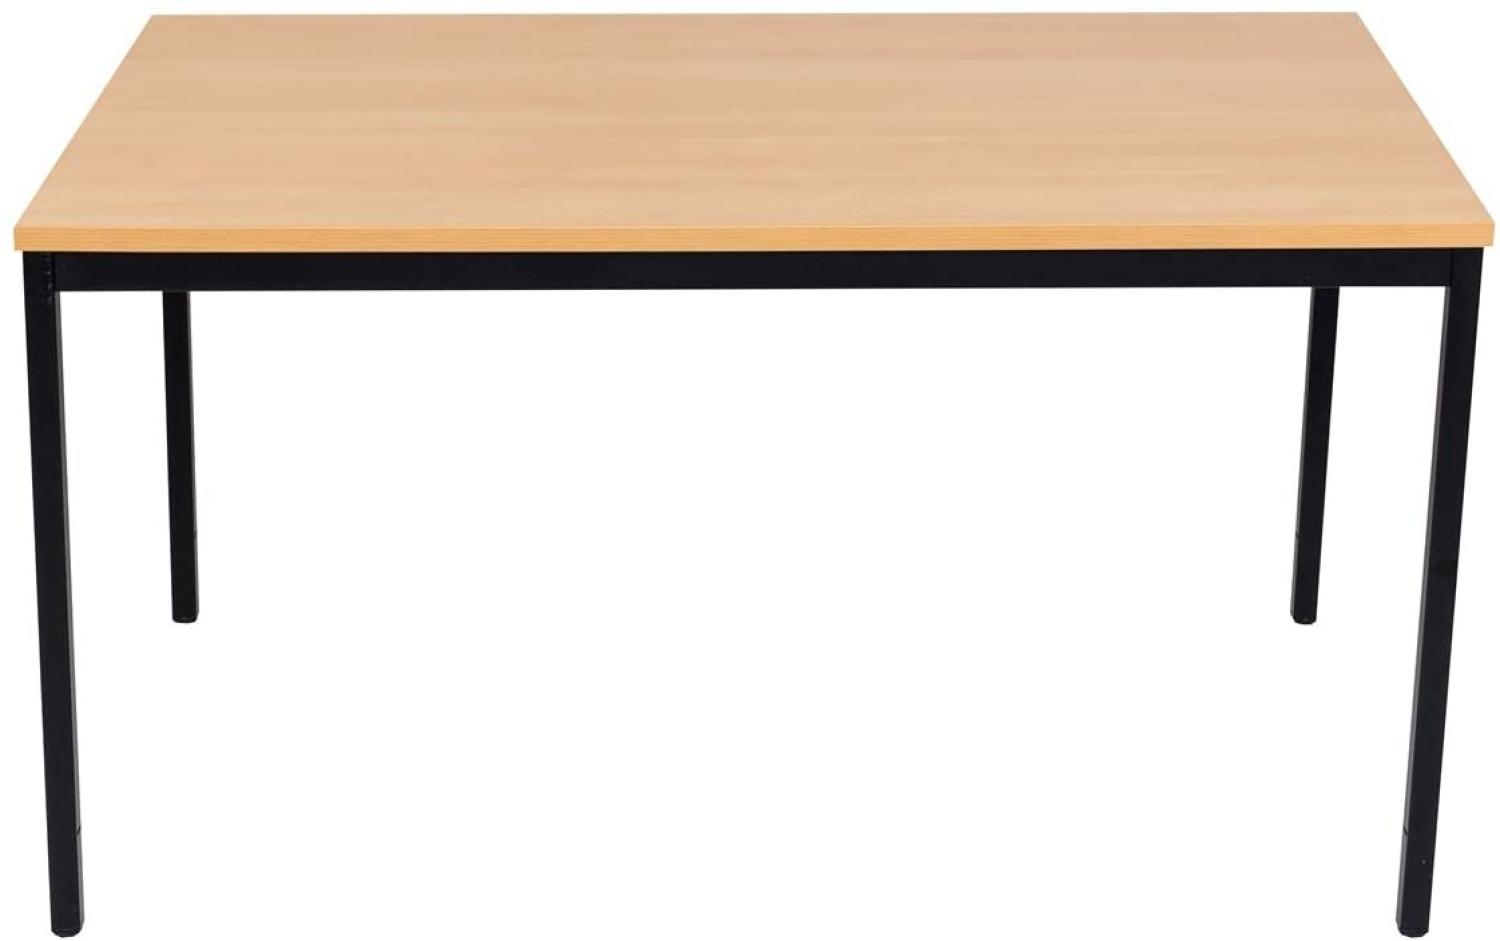 Furni24 Rechteckiger Universaltisch mit laminierter Platte, Metallgestell und verstellbaren Füßen, ideal im Homeoffice als Schreibtisch, Konferenztisch, Computertisch, Esstisch - buche 140x70x75 cm Bild 1